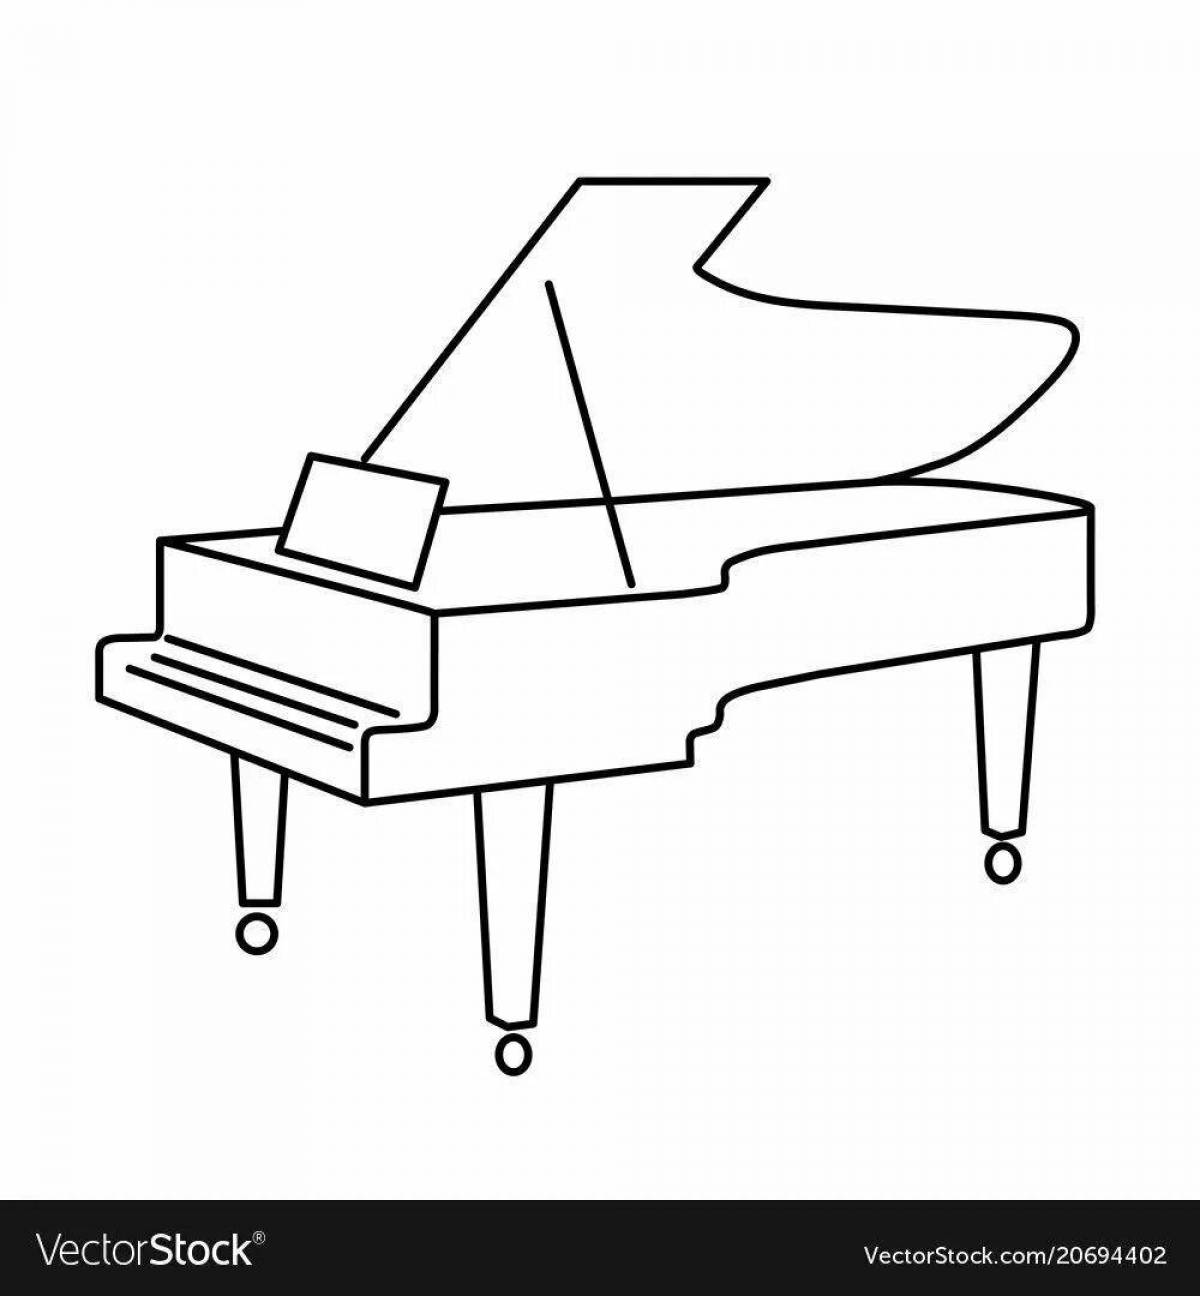 Children's piano #12